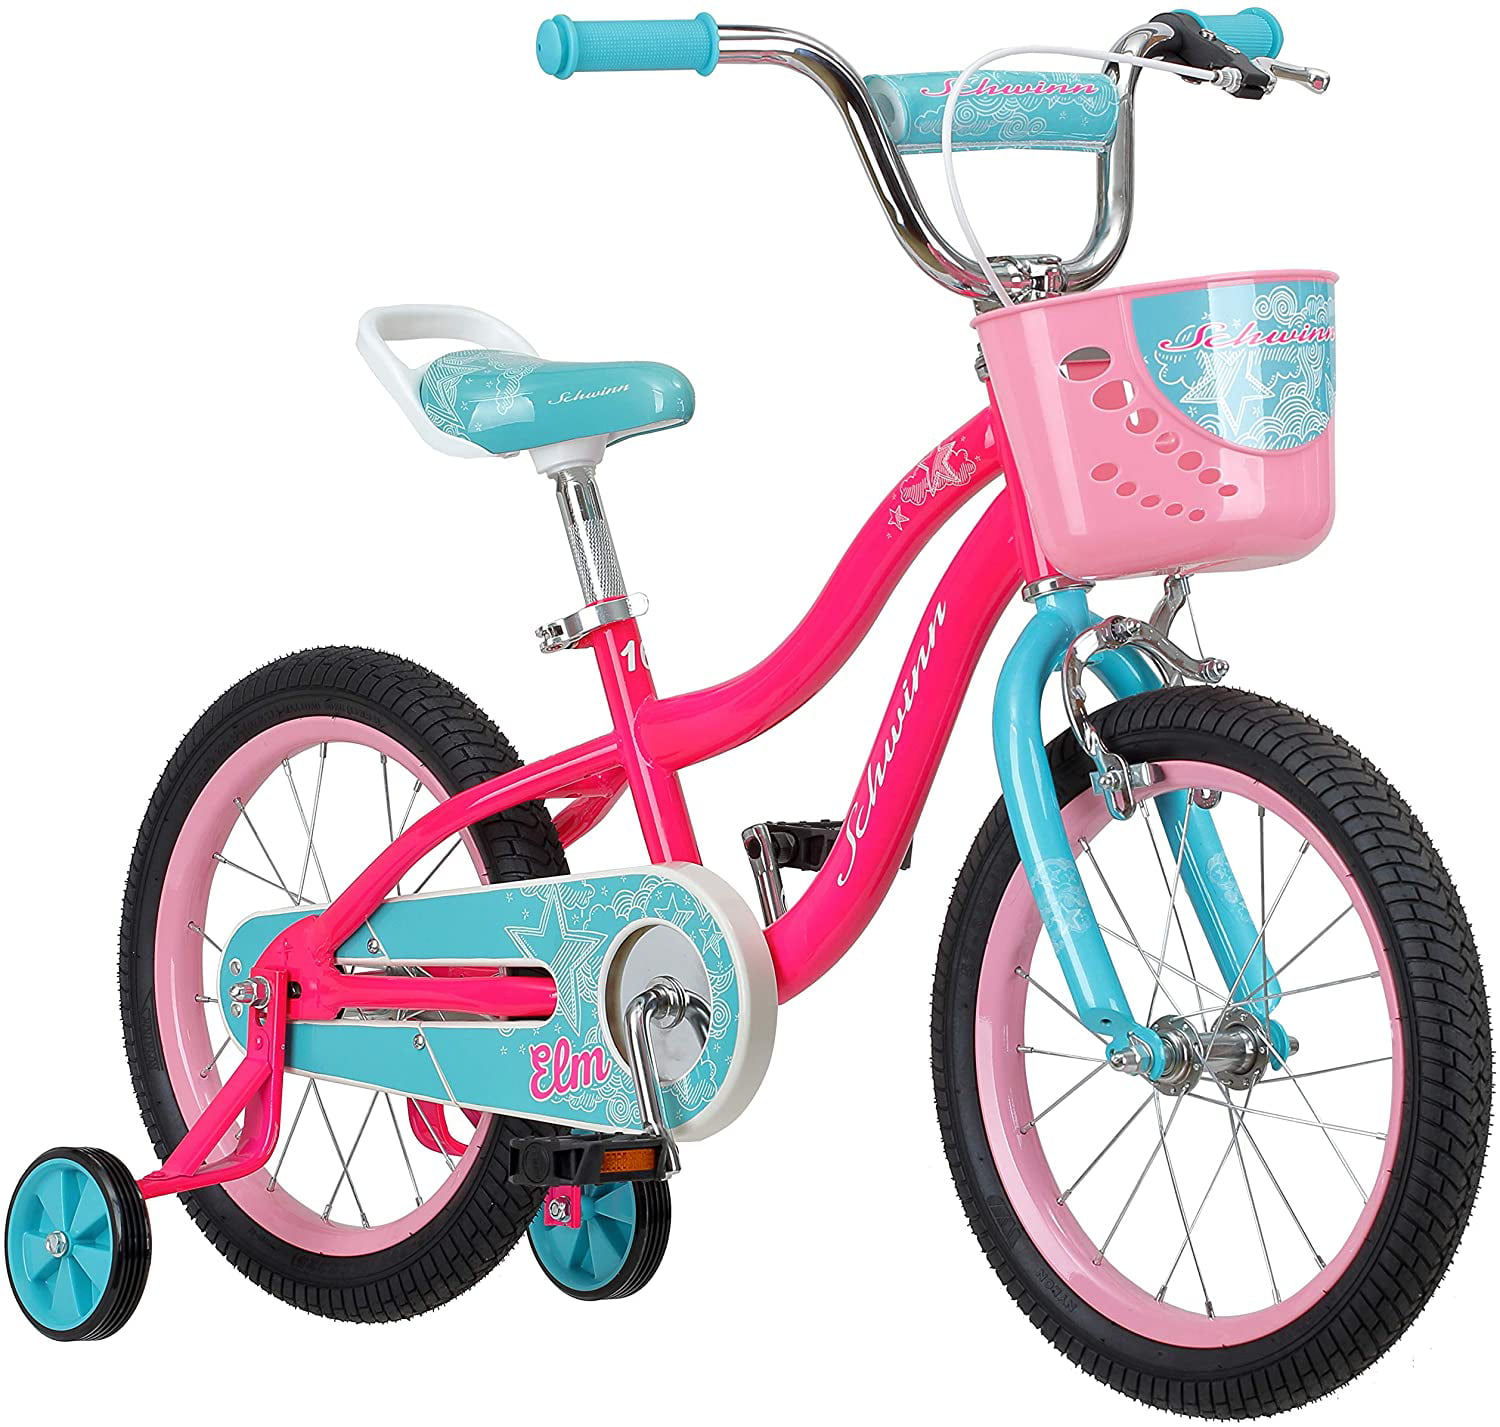 Schwinn Elm Girls Bike For Toddlers And Kids 12 14 16 18 20 In